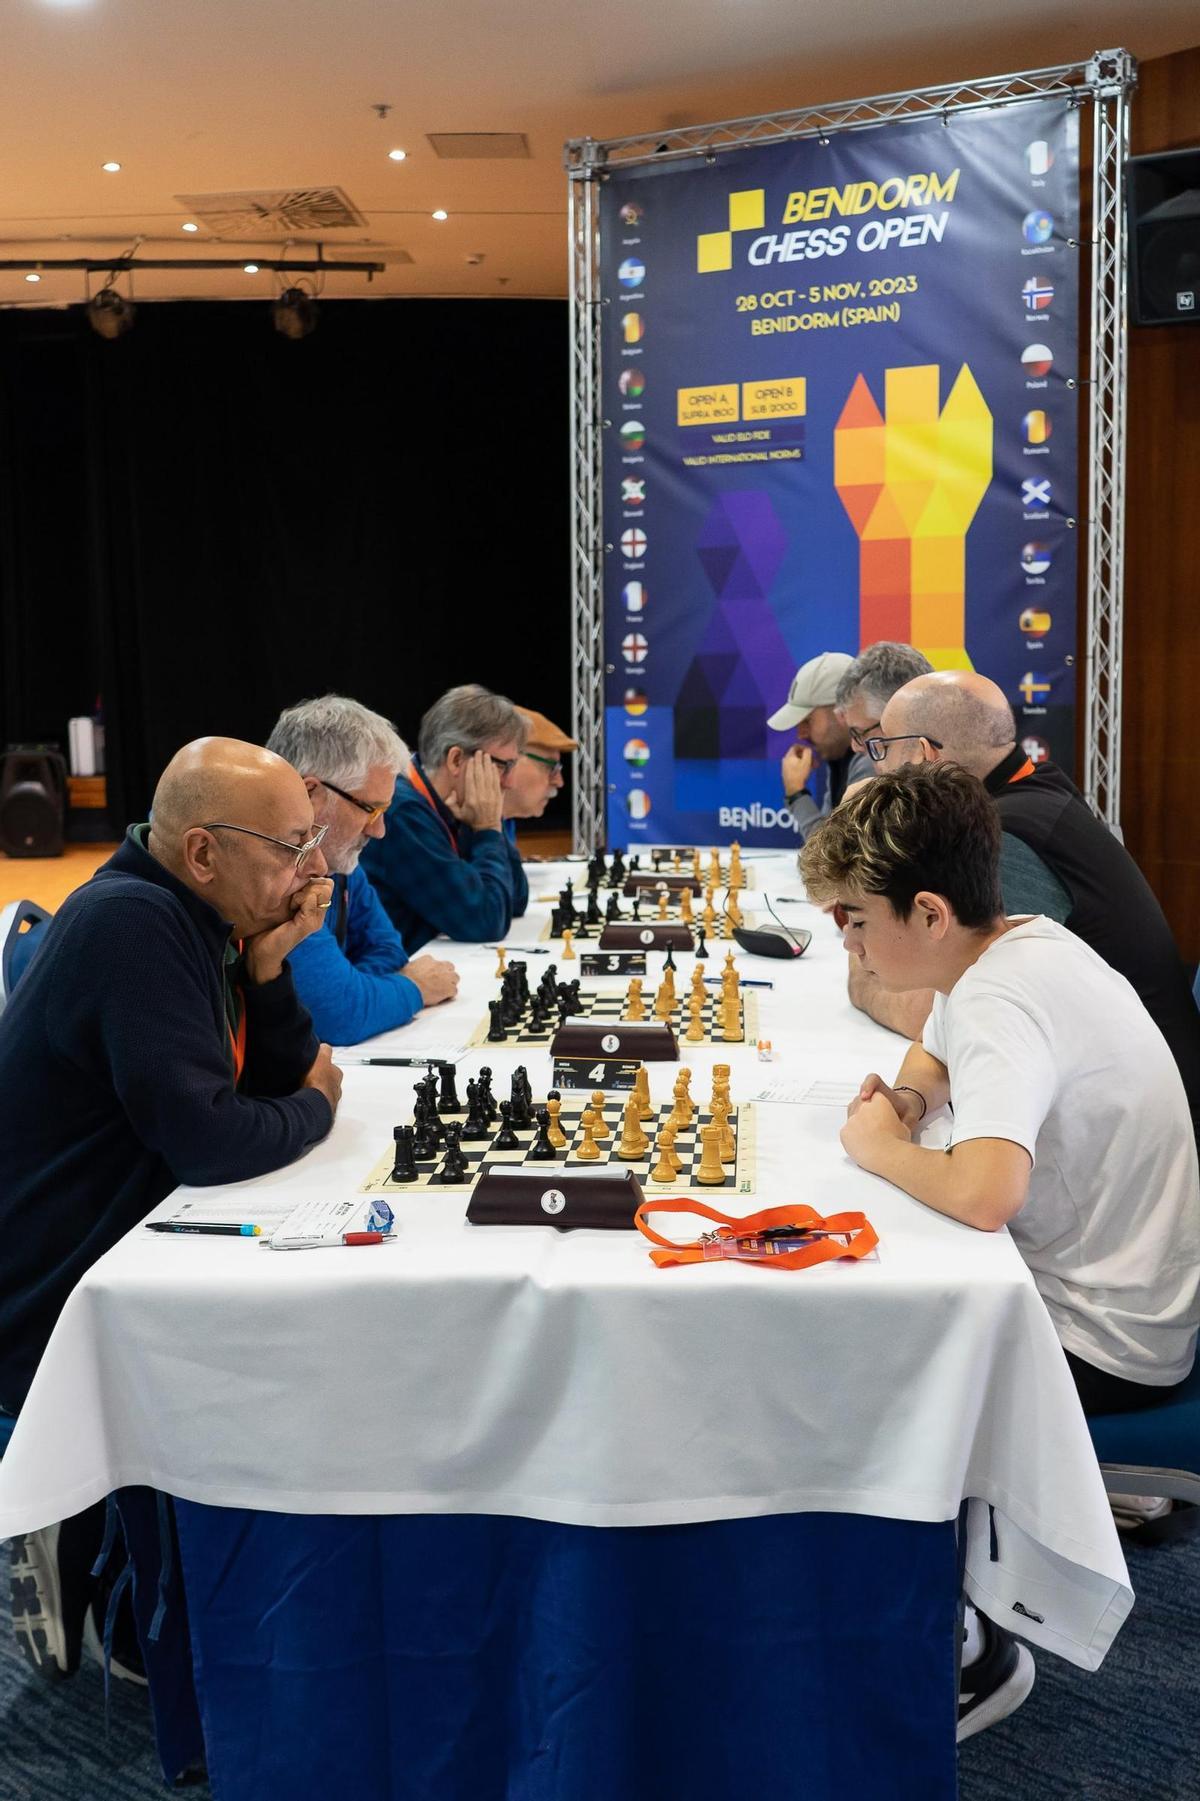 El Benidorm Ches Open, organizado por el Club de Ajedrez Caballo Blanco Benidorm, es válido para ELO FIDE y se rige por las normas internacionales.